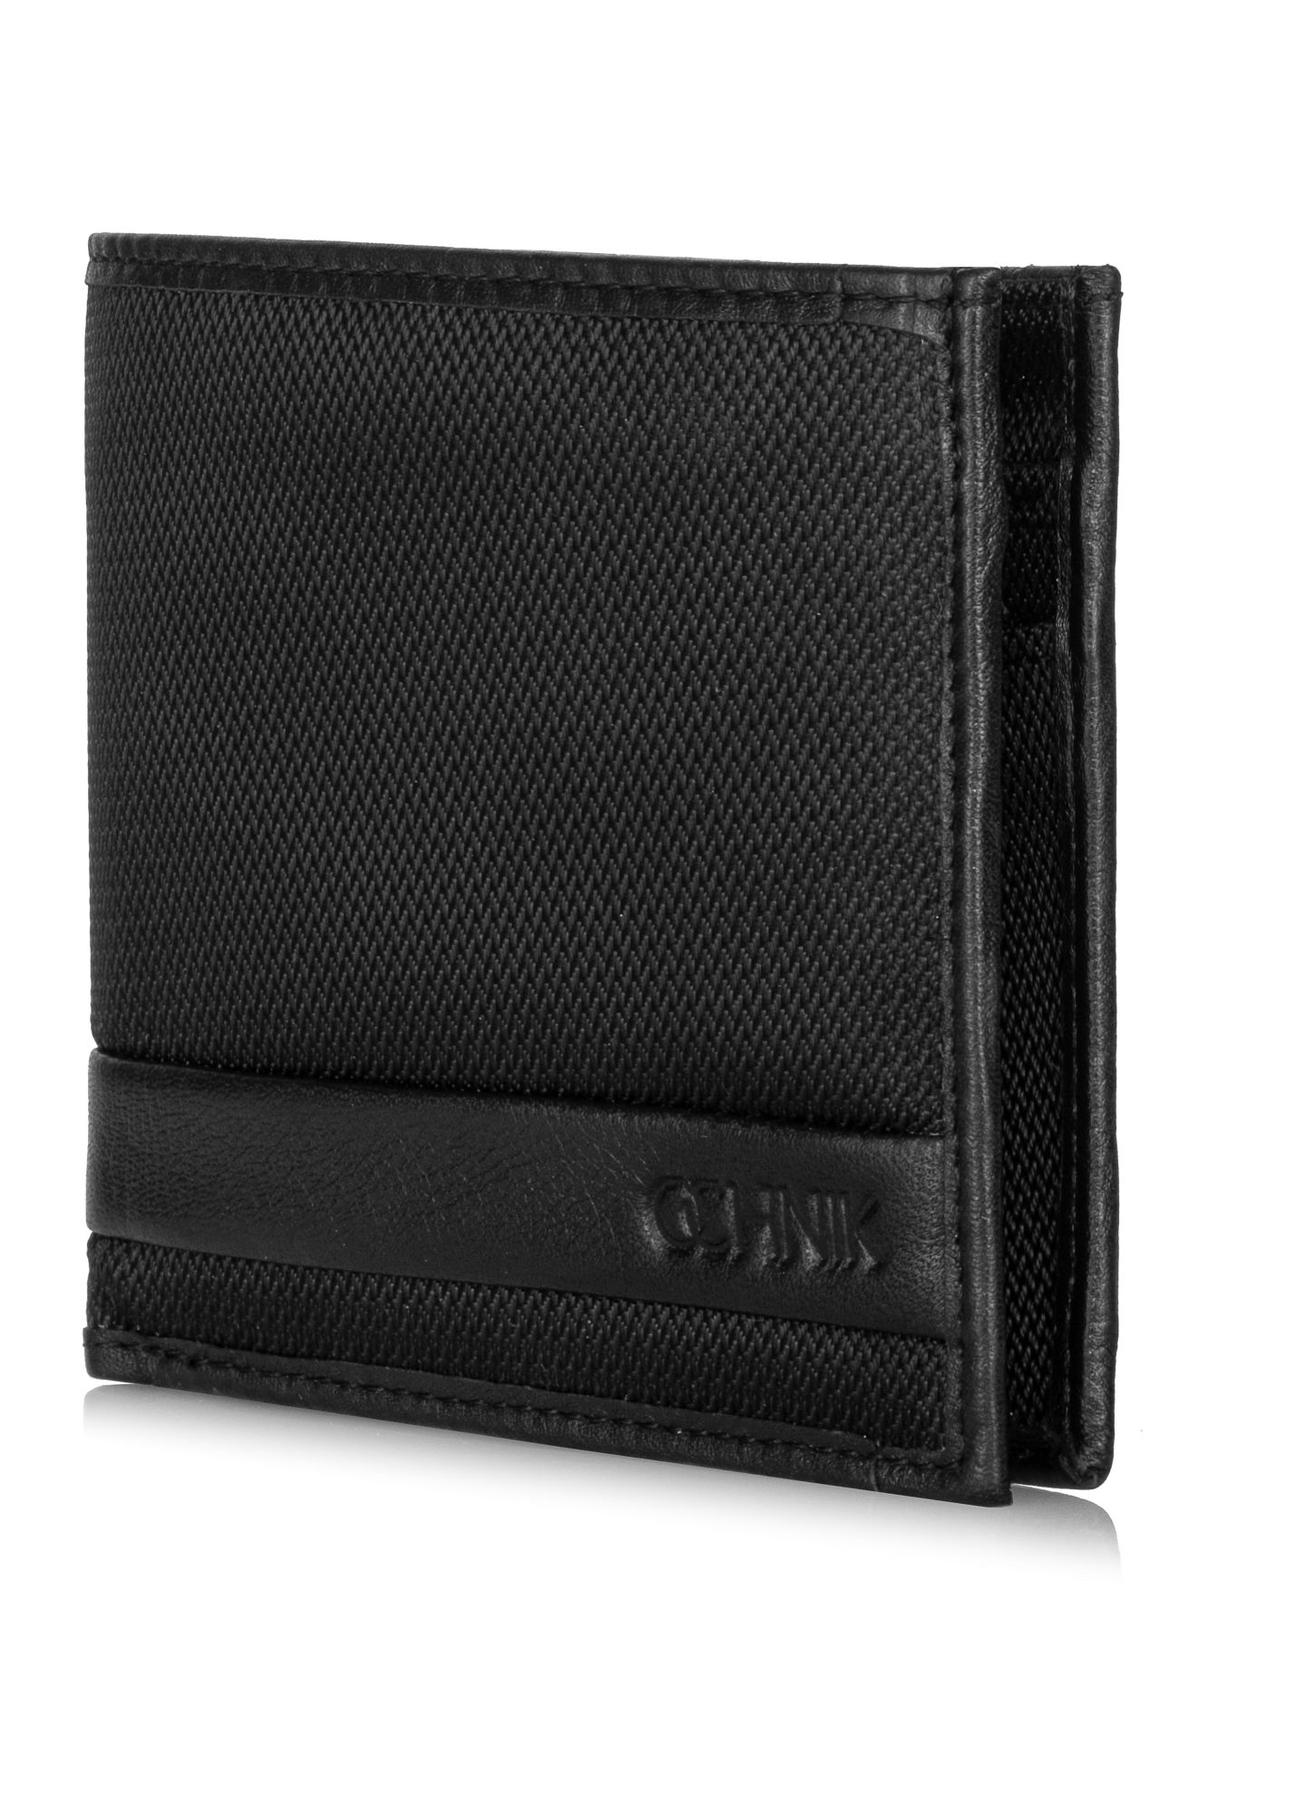 Czarny rozkładany portfel męski PORMN-0018-99(Z23)